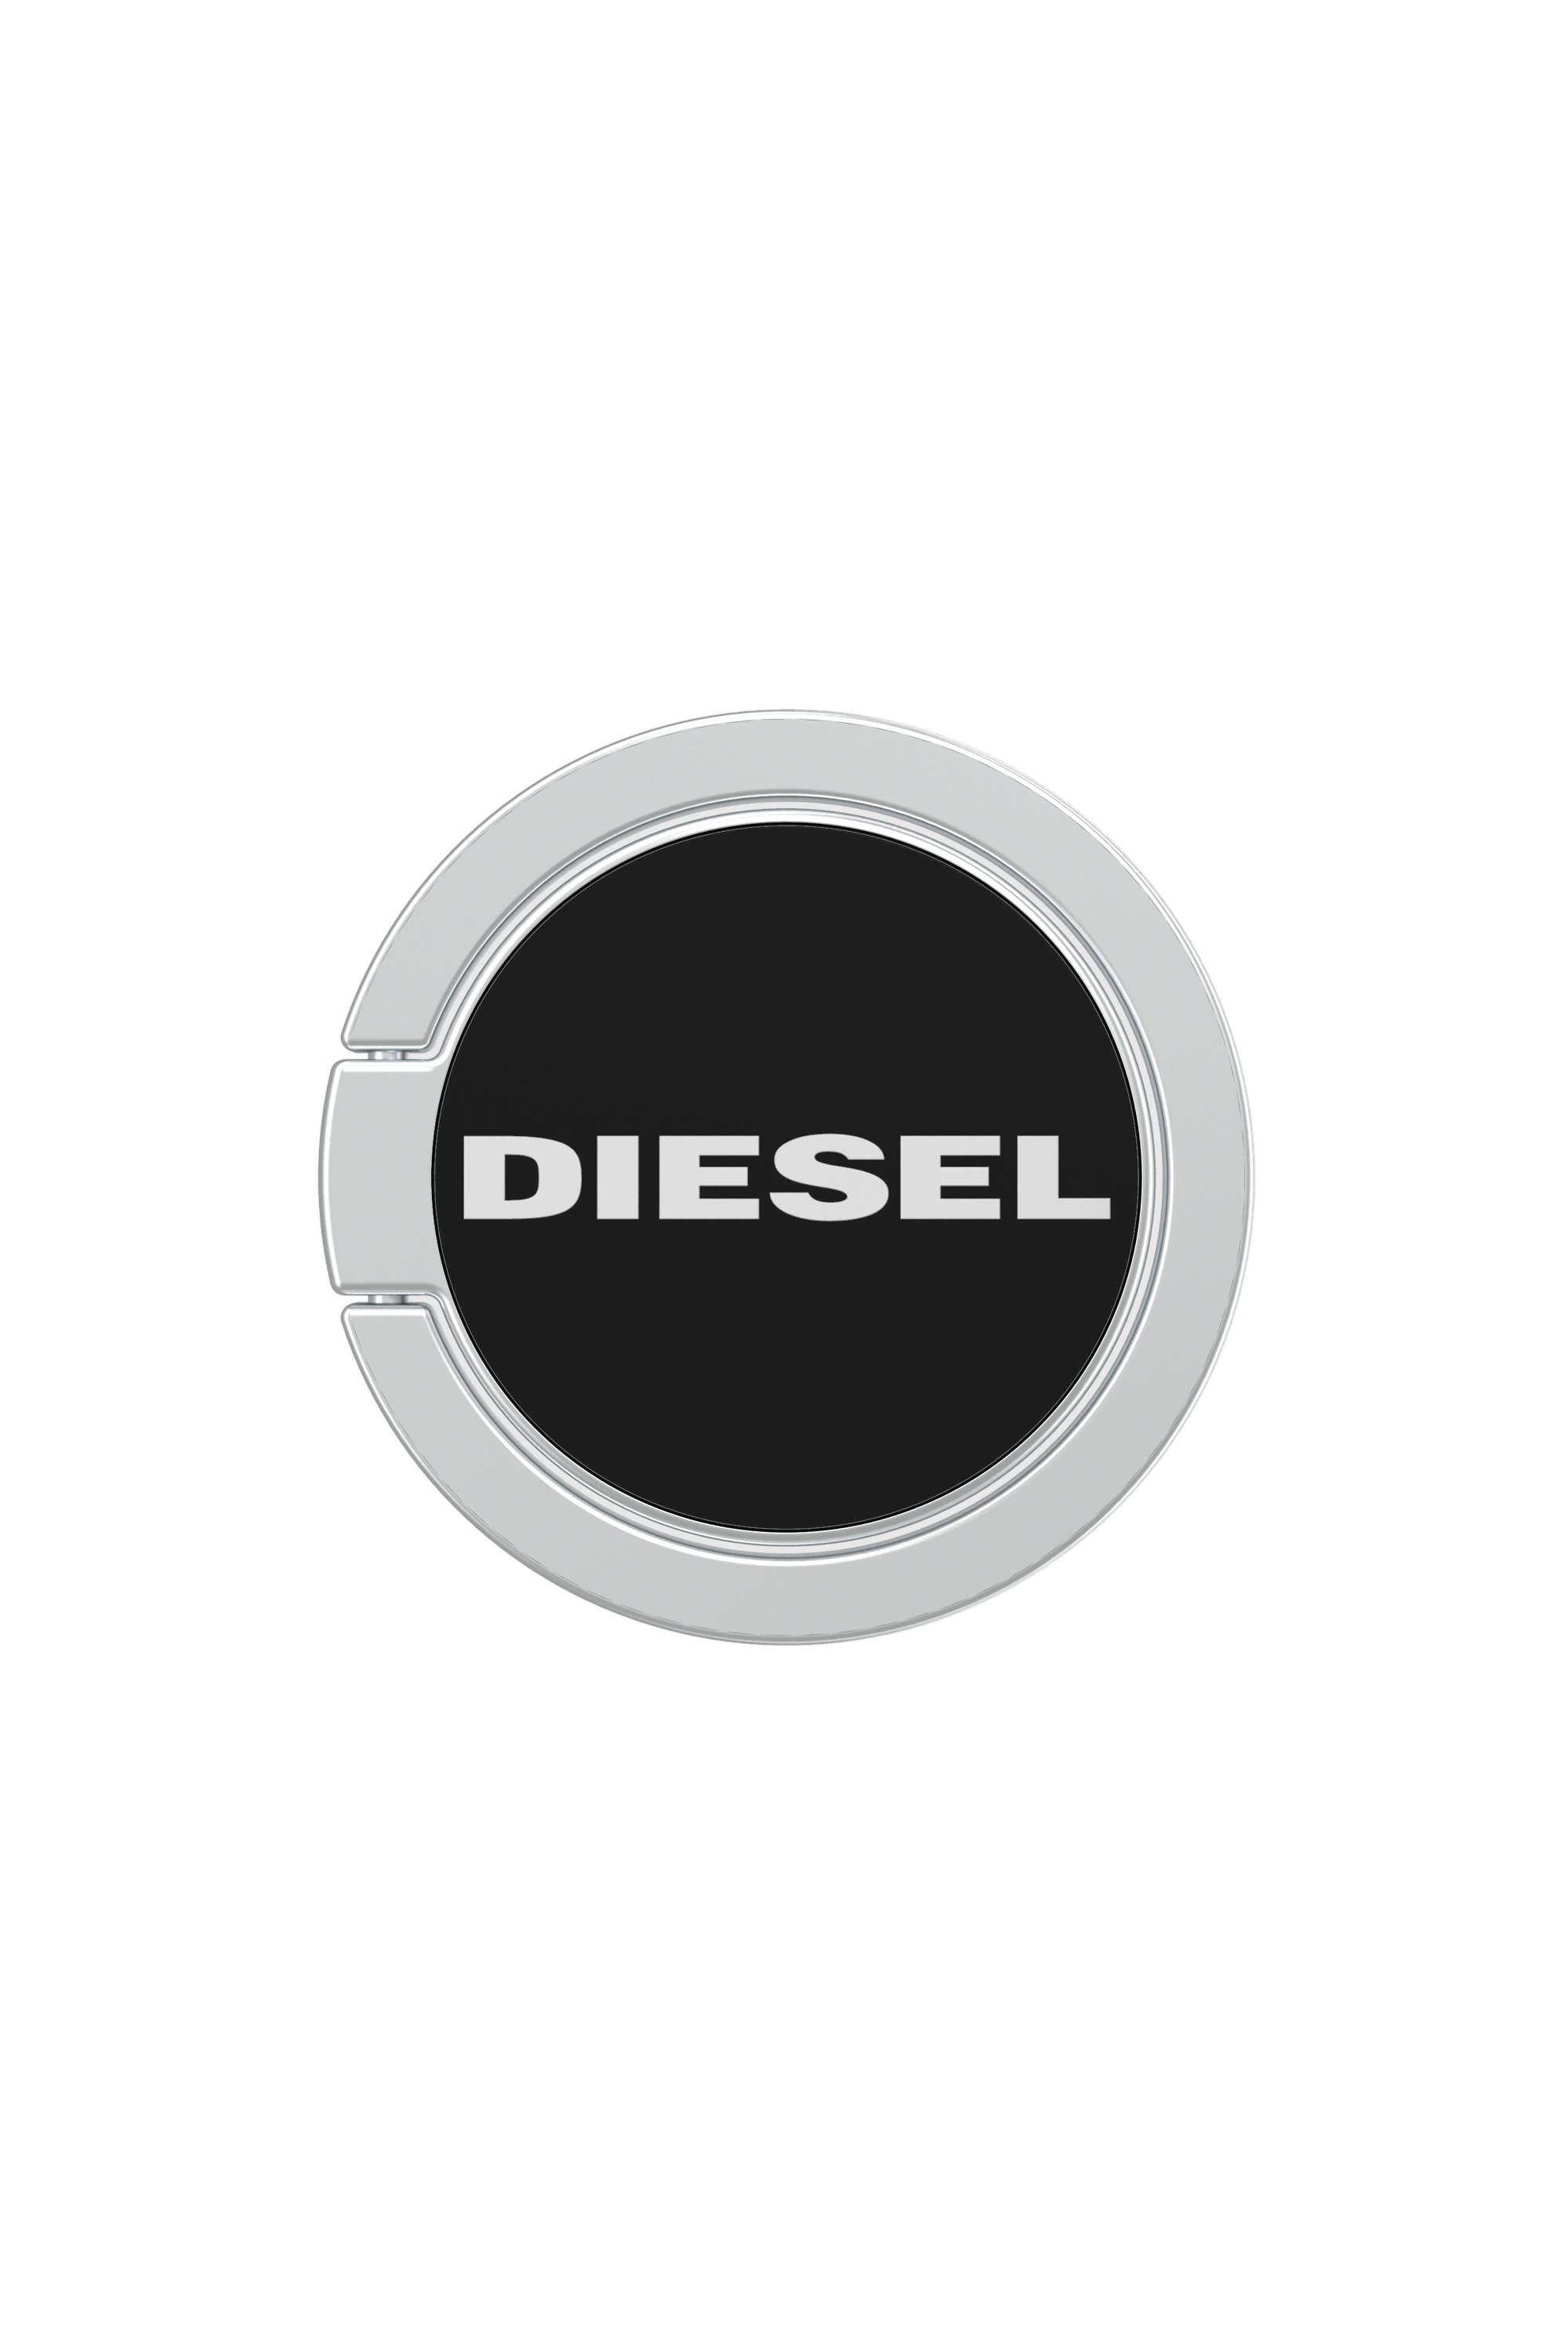 Diesel - 41919, Black - Image 1